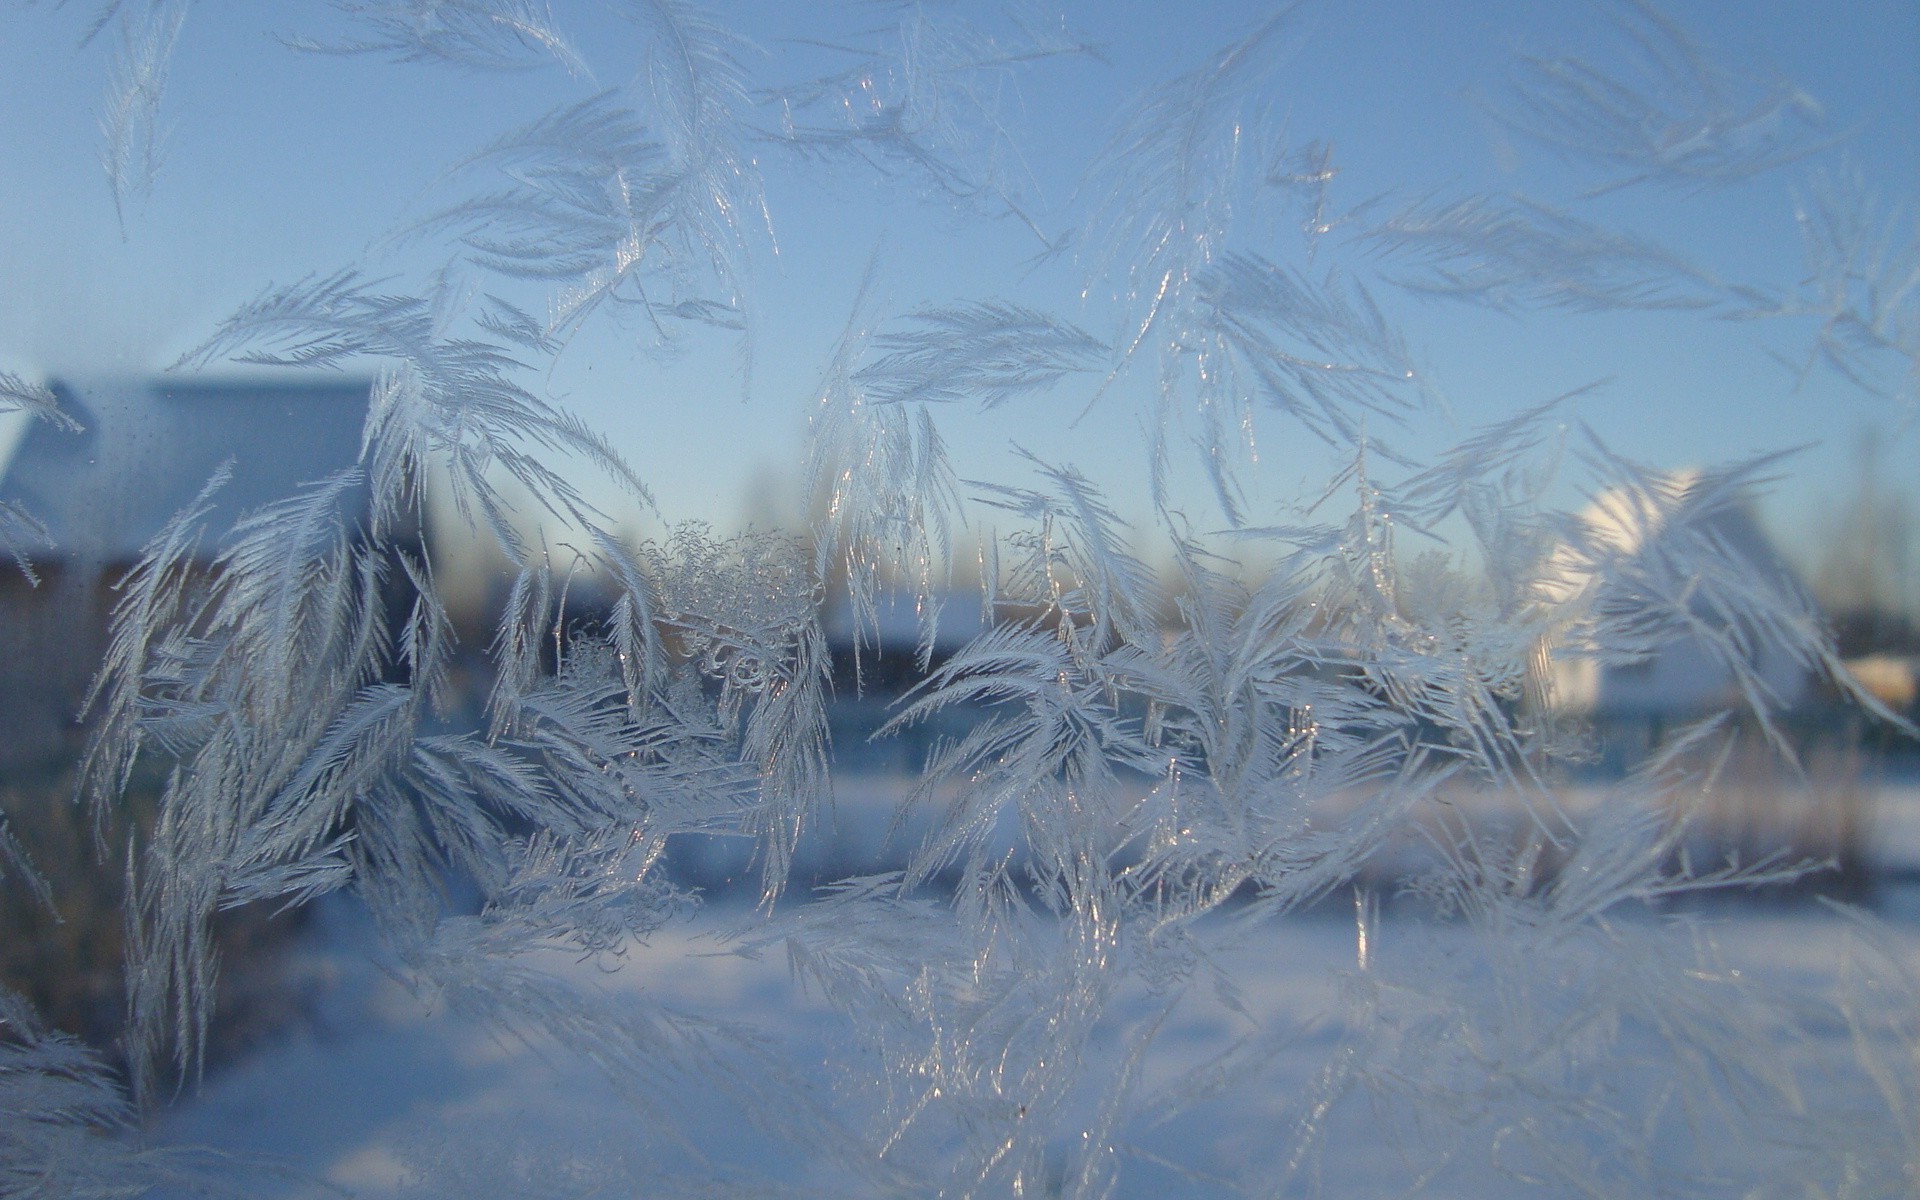 узоры зима снег холодная мороз замороженные лед сезон природа погода рабочего стола пейзаж морозный свет ледяной цвет хорошую погоду среды отражение